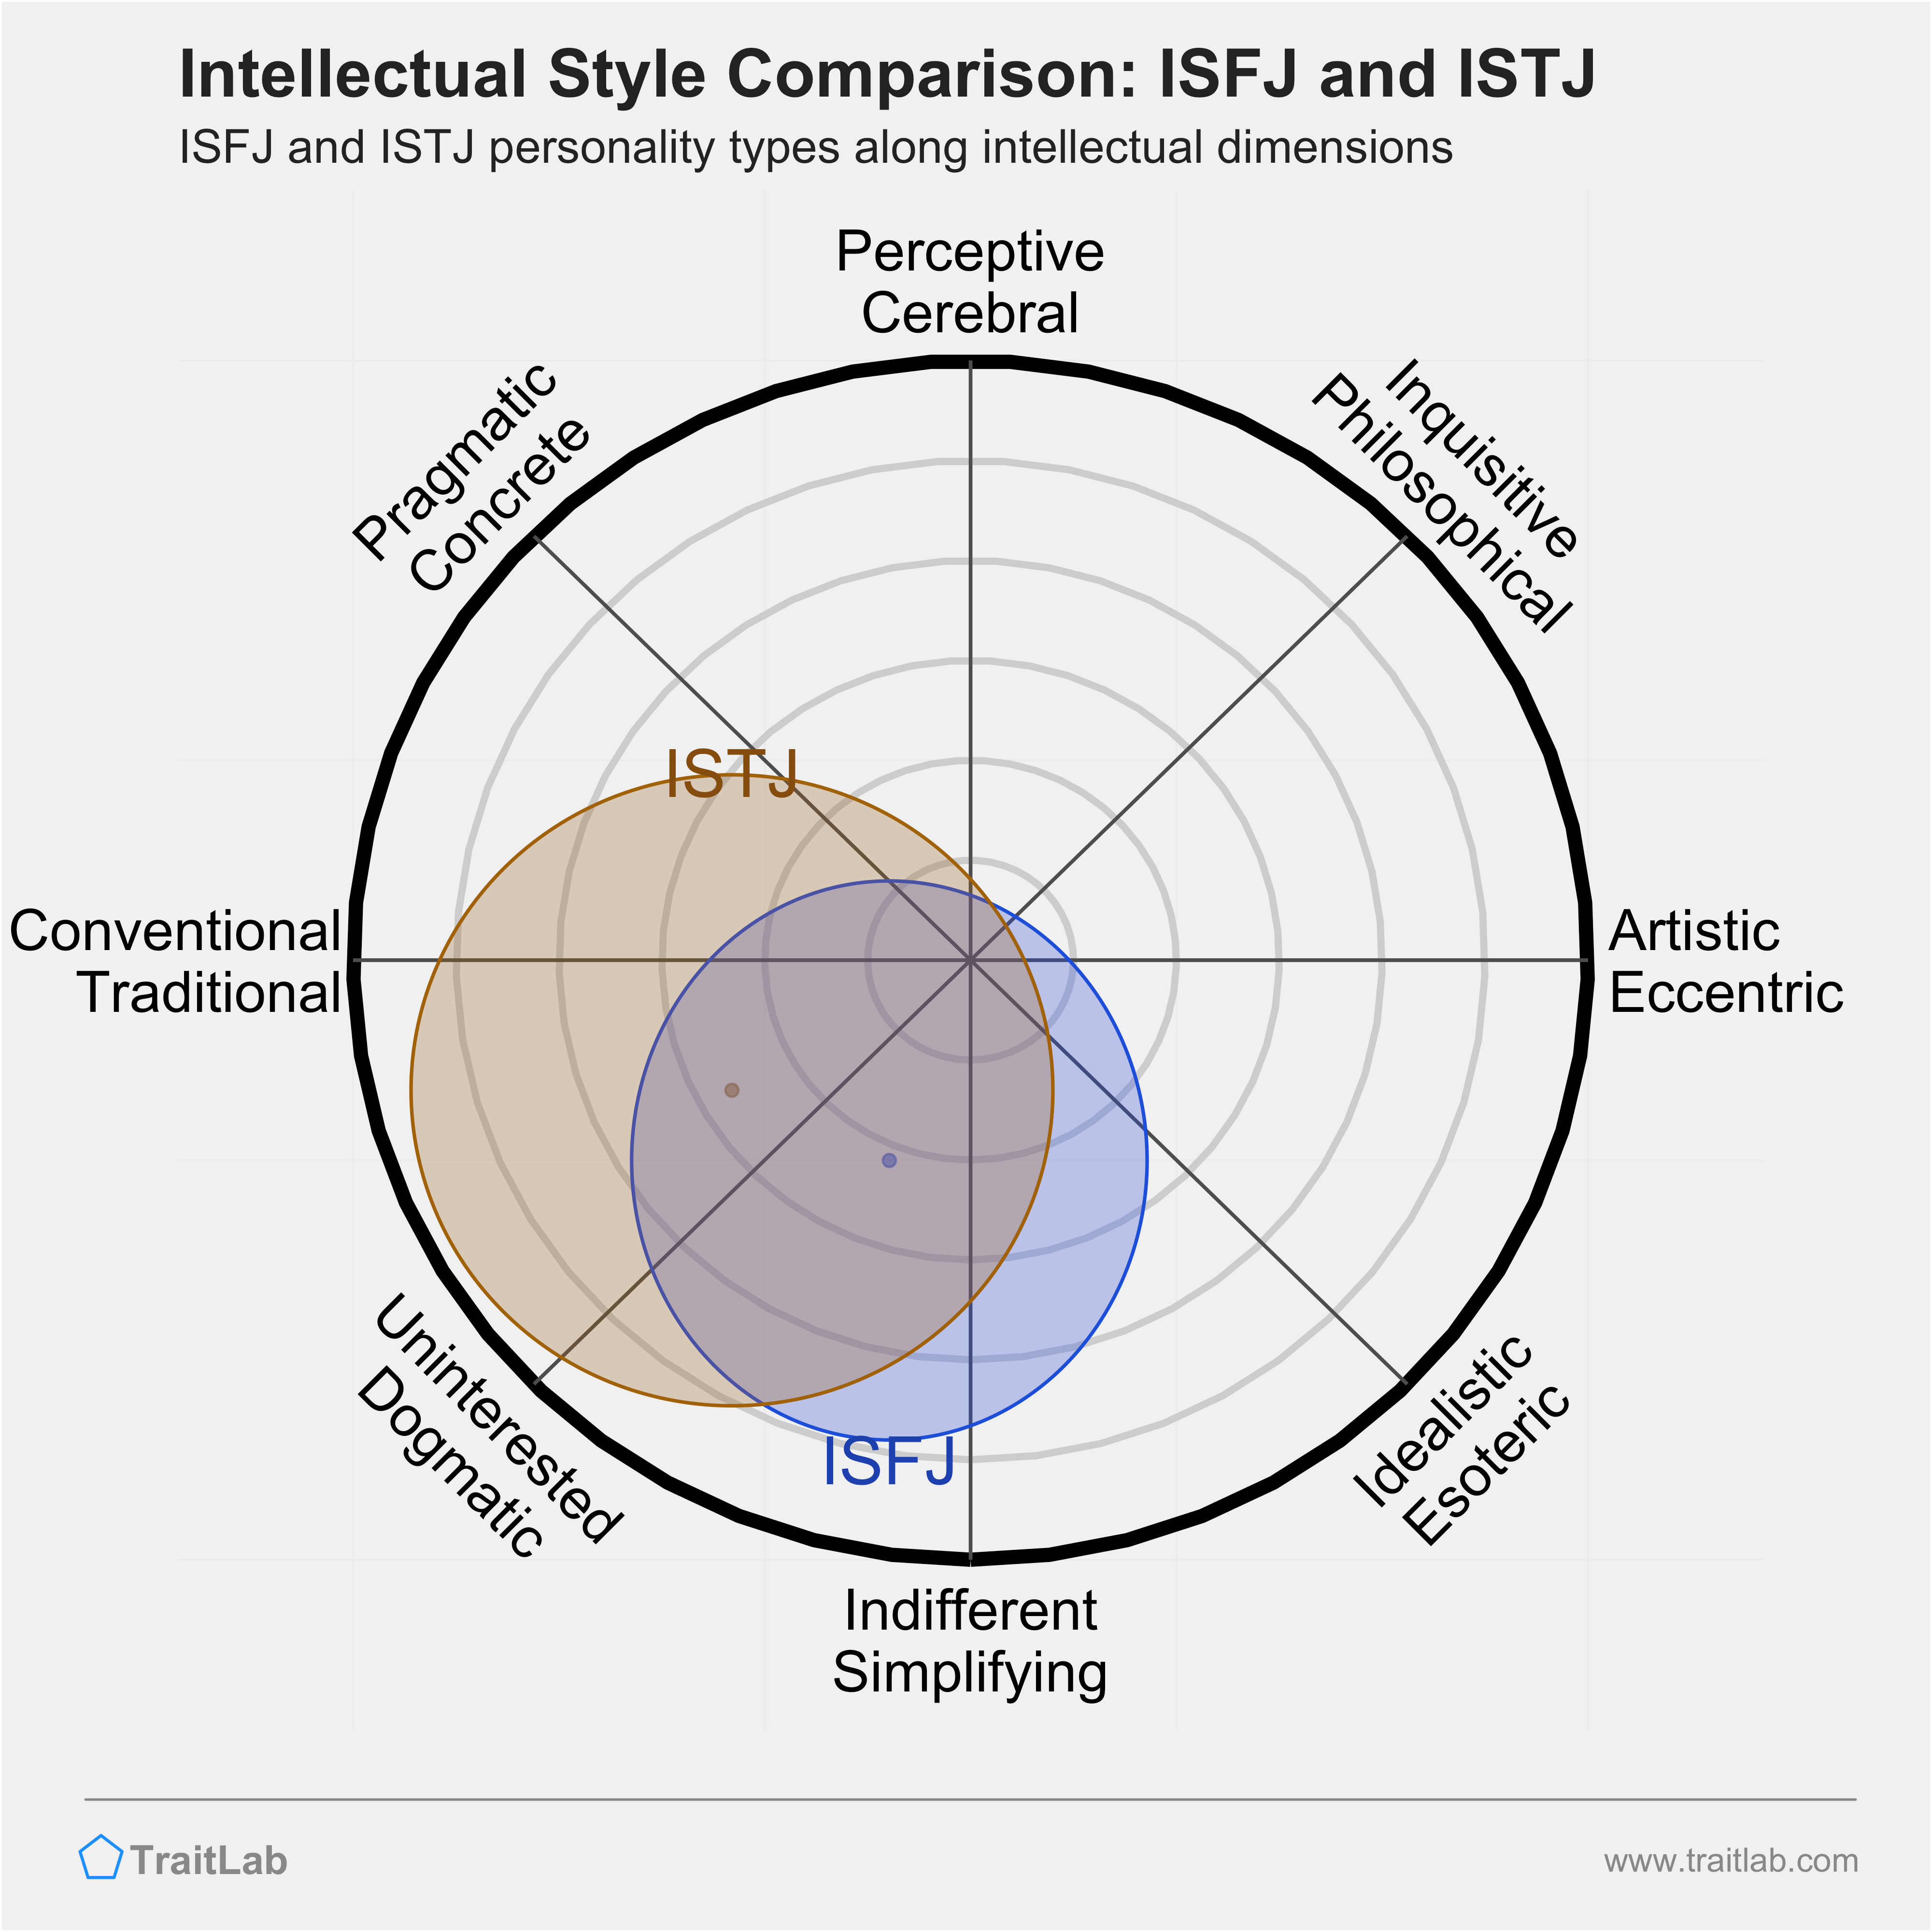 ISFJ and ISTJ comparison across intellectual dimensions